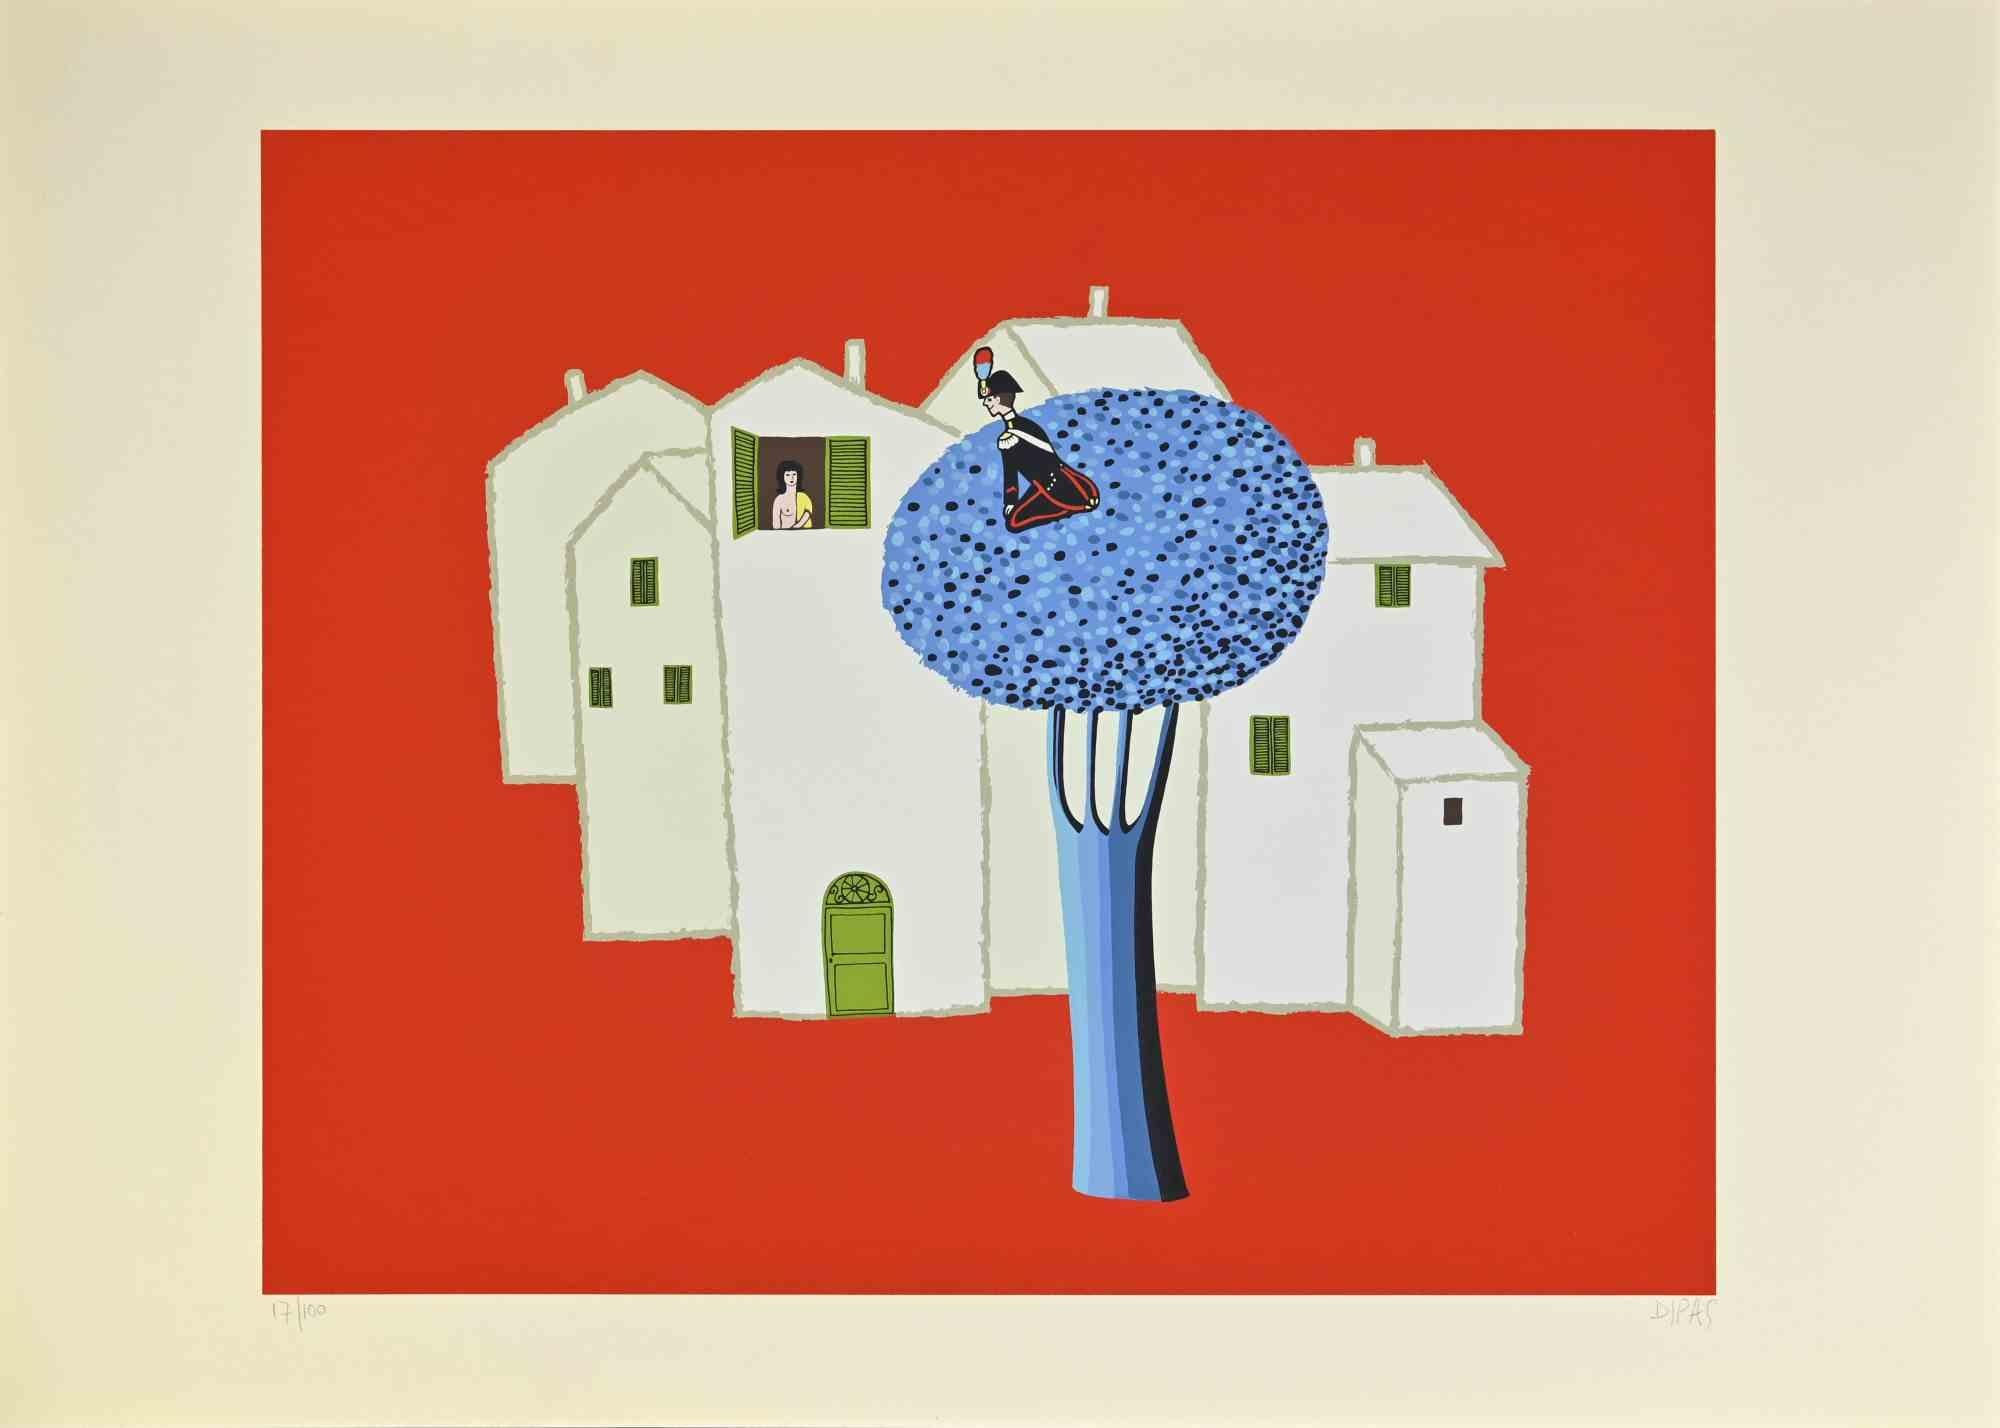 Sur l'arbre bleu est une œuvre d'art contemporain réalisée par l'artiste Dipas dans les années 1970.

Sérigraphie de couleurs mélangées.

Signé à la main dans la marge inférieure droite.

Numéroté dans la marge inférieure gauche.

Édition de 17/100.